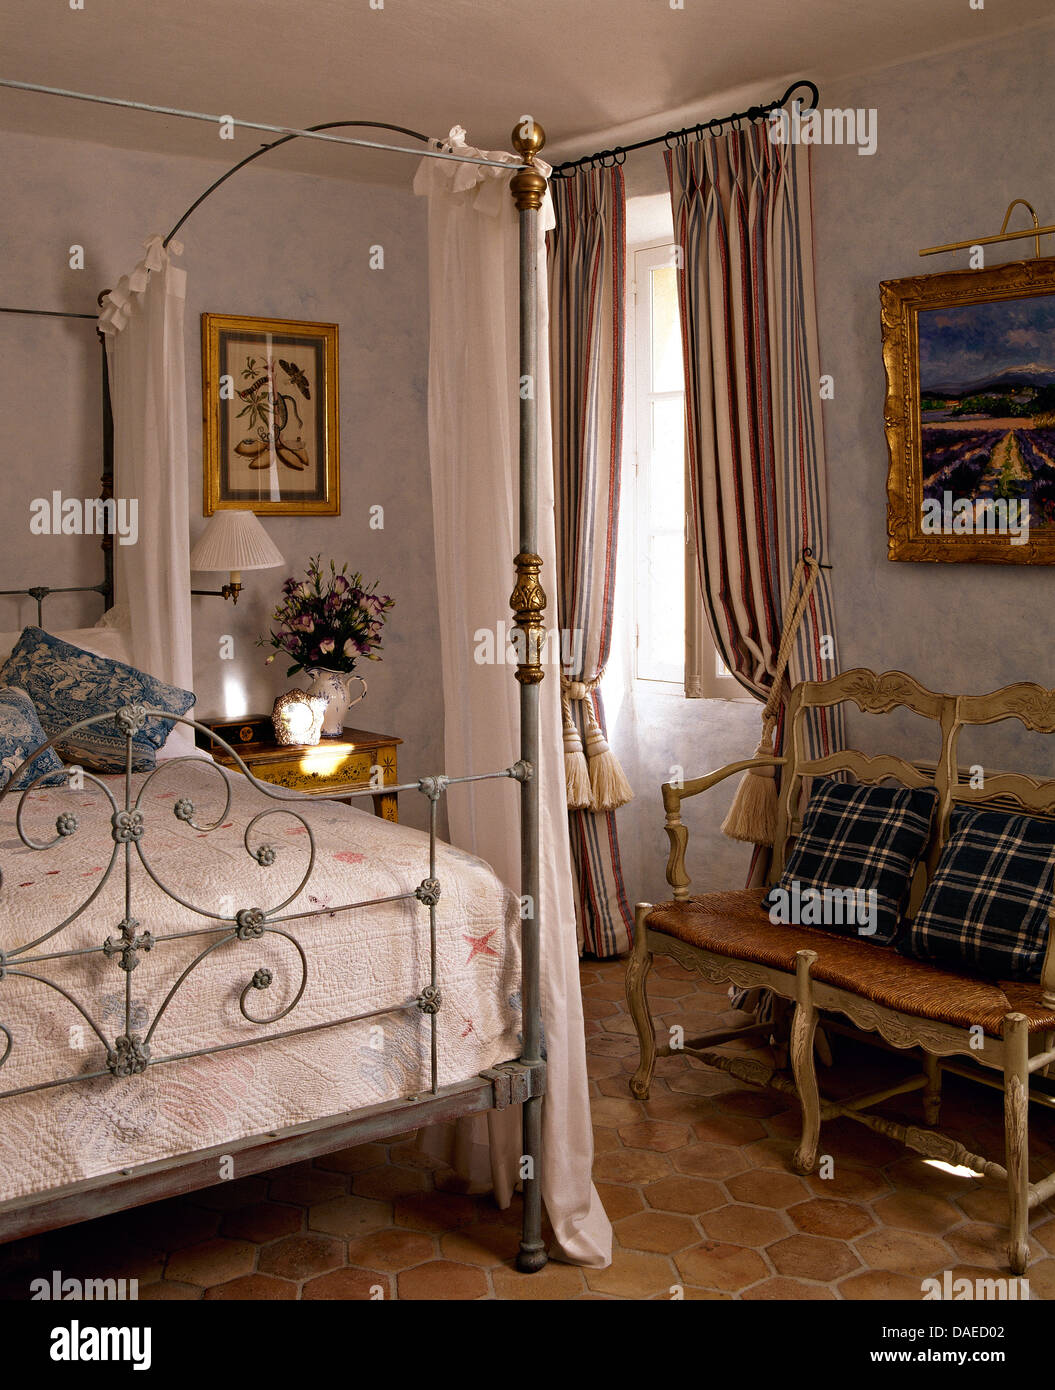 Antico metallo battuto letto con drappi bianchi nel paese francese camera da letto con rush seduto con divano blu cuscini controllati Foto Stock